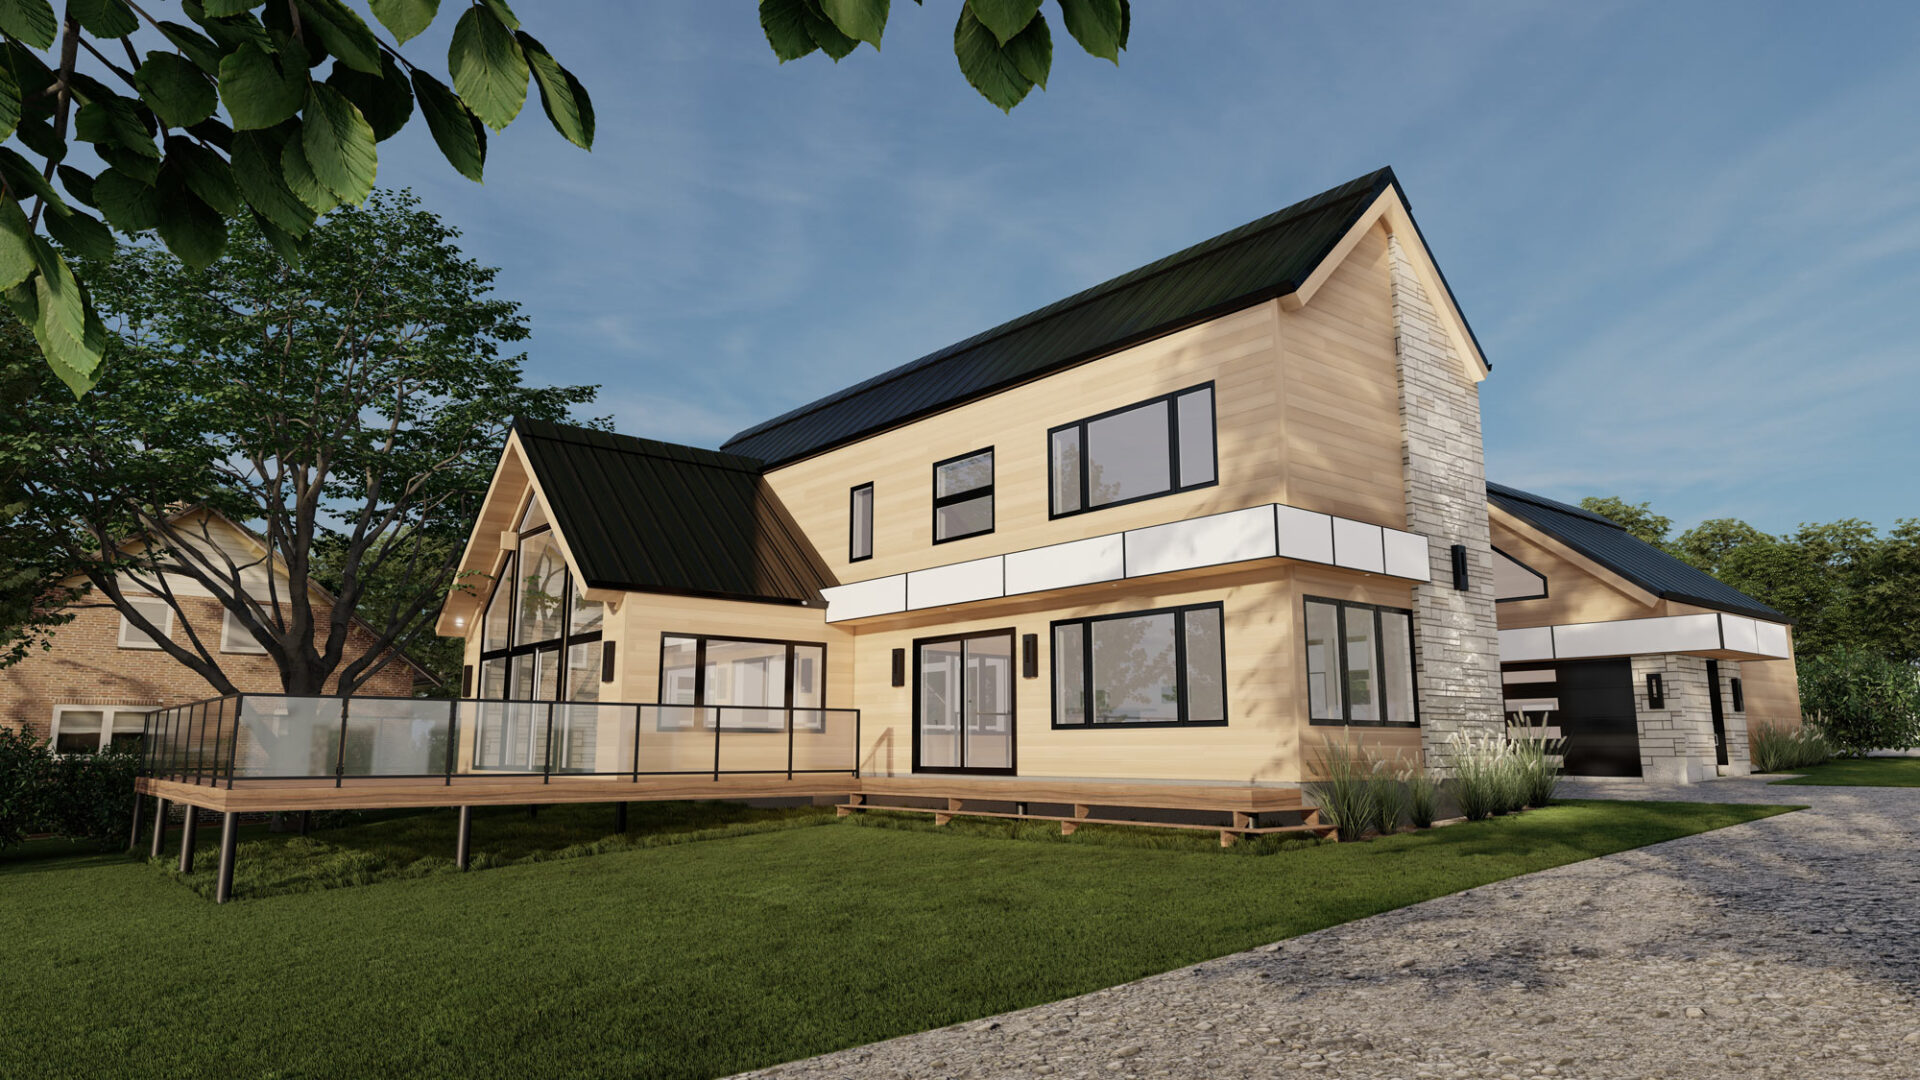 Style scandinave, rénovation majeure, revêtement de bois naturel, revêtement d'aluminium Rialux avec de la maçonnerie, toit en tôle